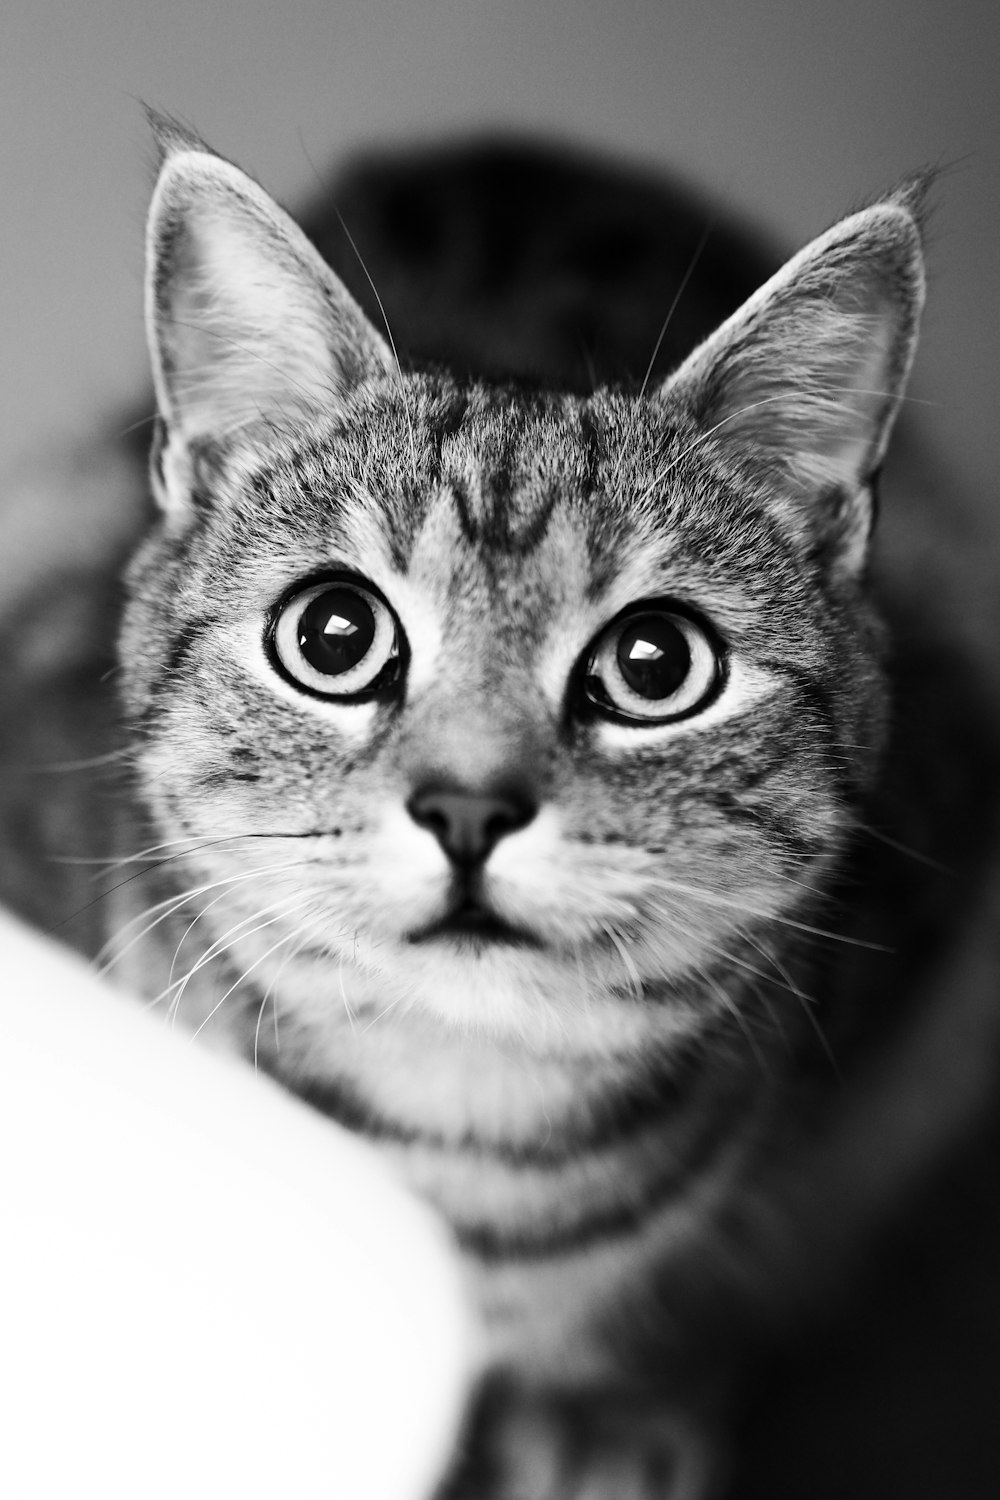 ぶち猫のグレースケール写真